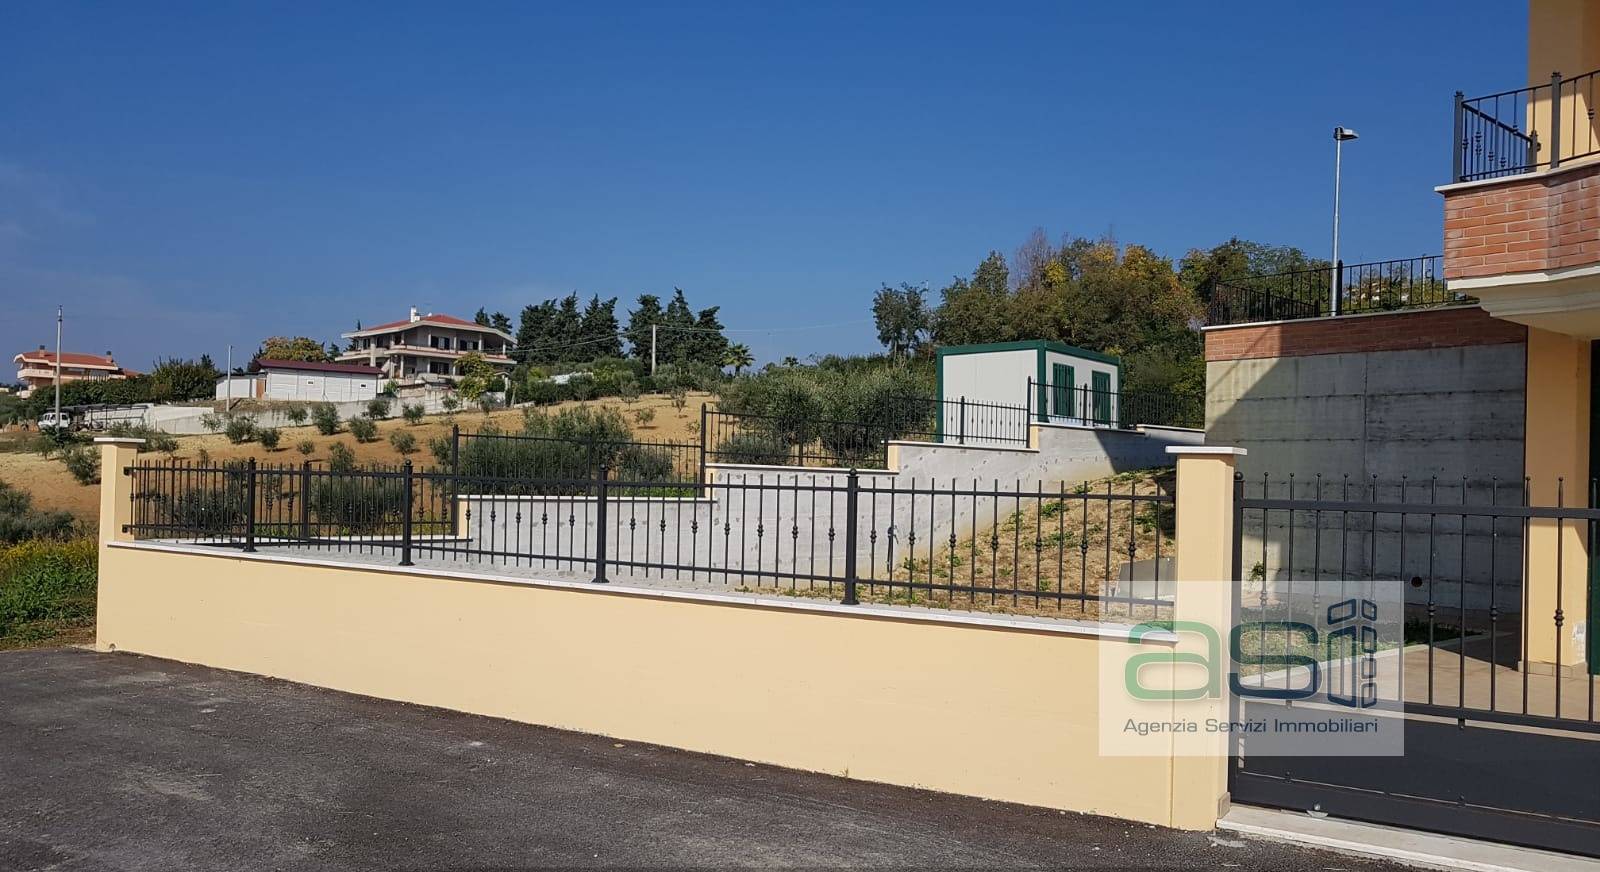 Villa Bifamiliare in vendita a Colonnella, 6 locali, zona Località: ContradaRioMoro, prezzo € 270.000 | PortaleAgenzieImmobiliari.it